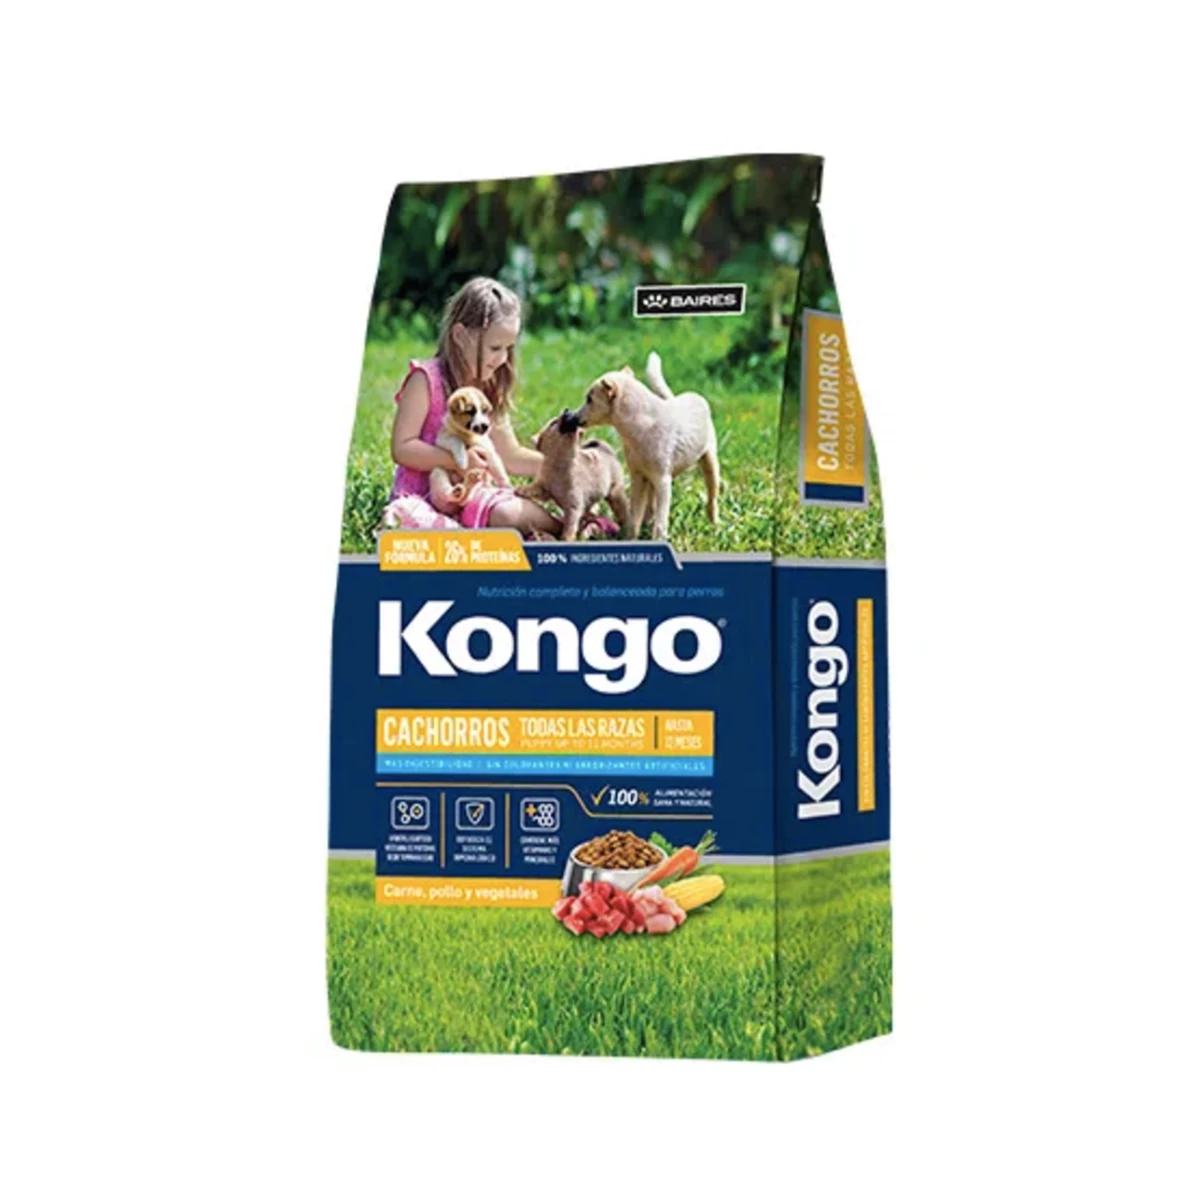 kongo-cachorro-todas-las-razas-8kg